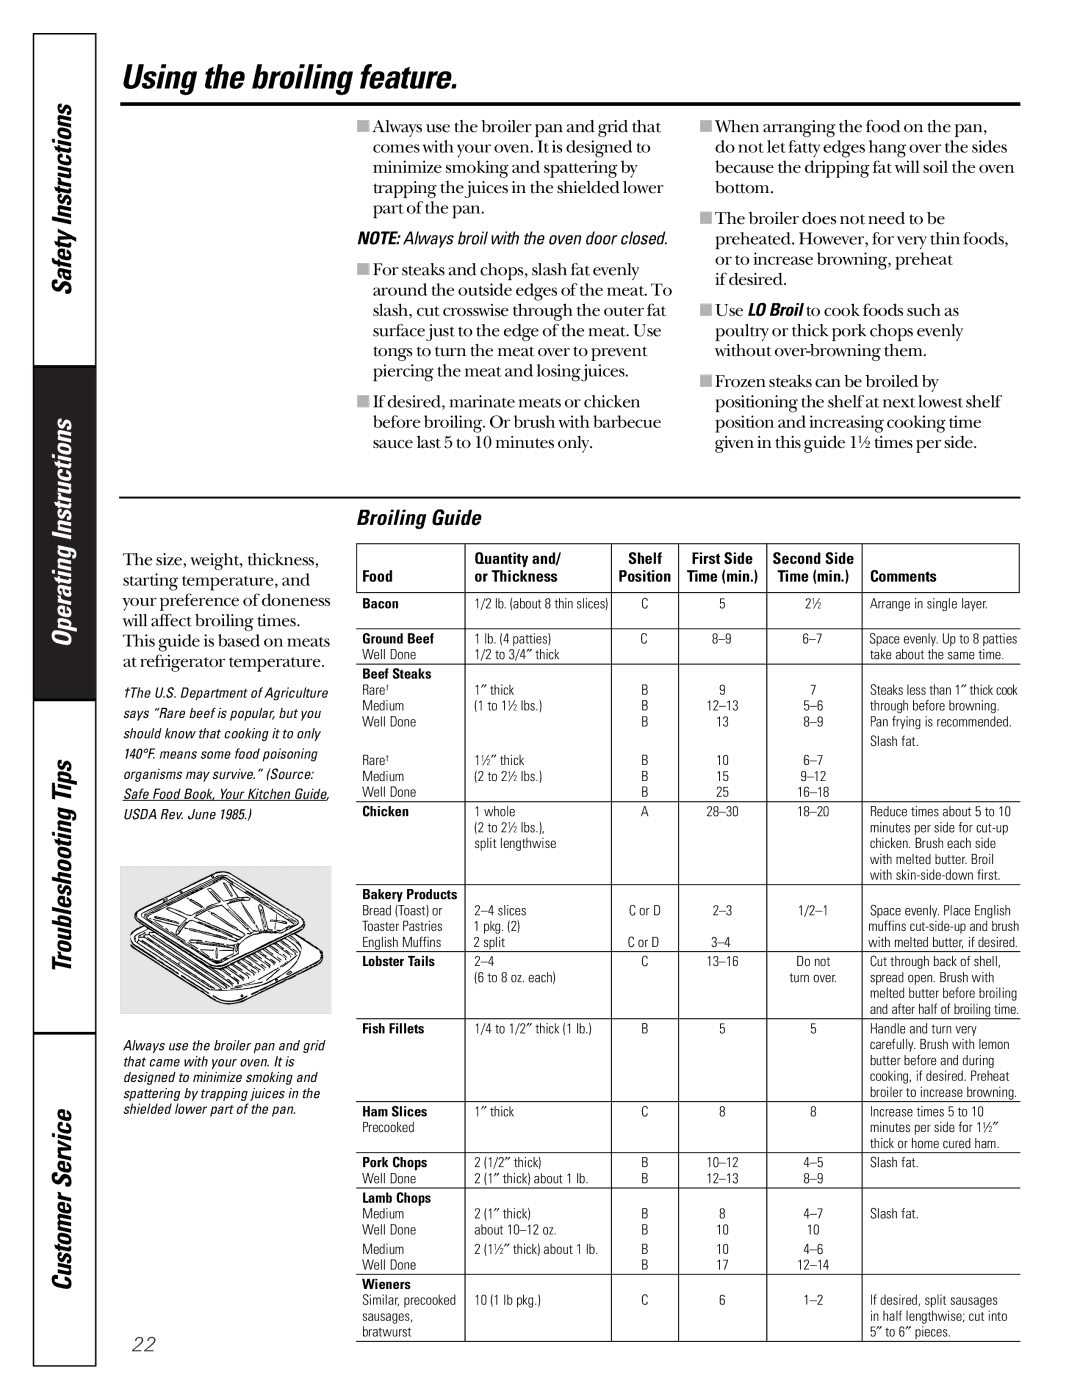 GE JGRP17 owner manual Broiling Guide, Usda Rev. June 